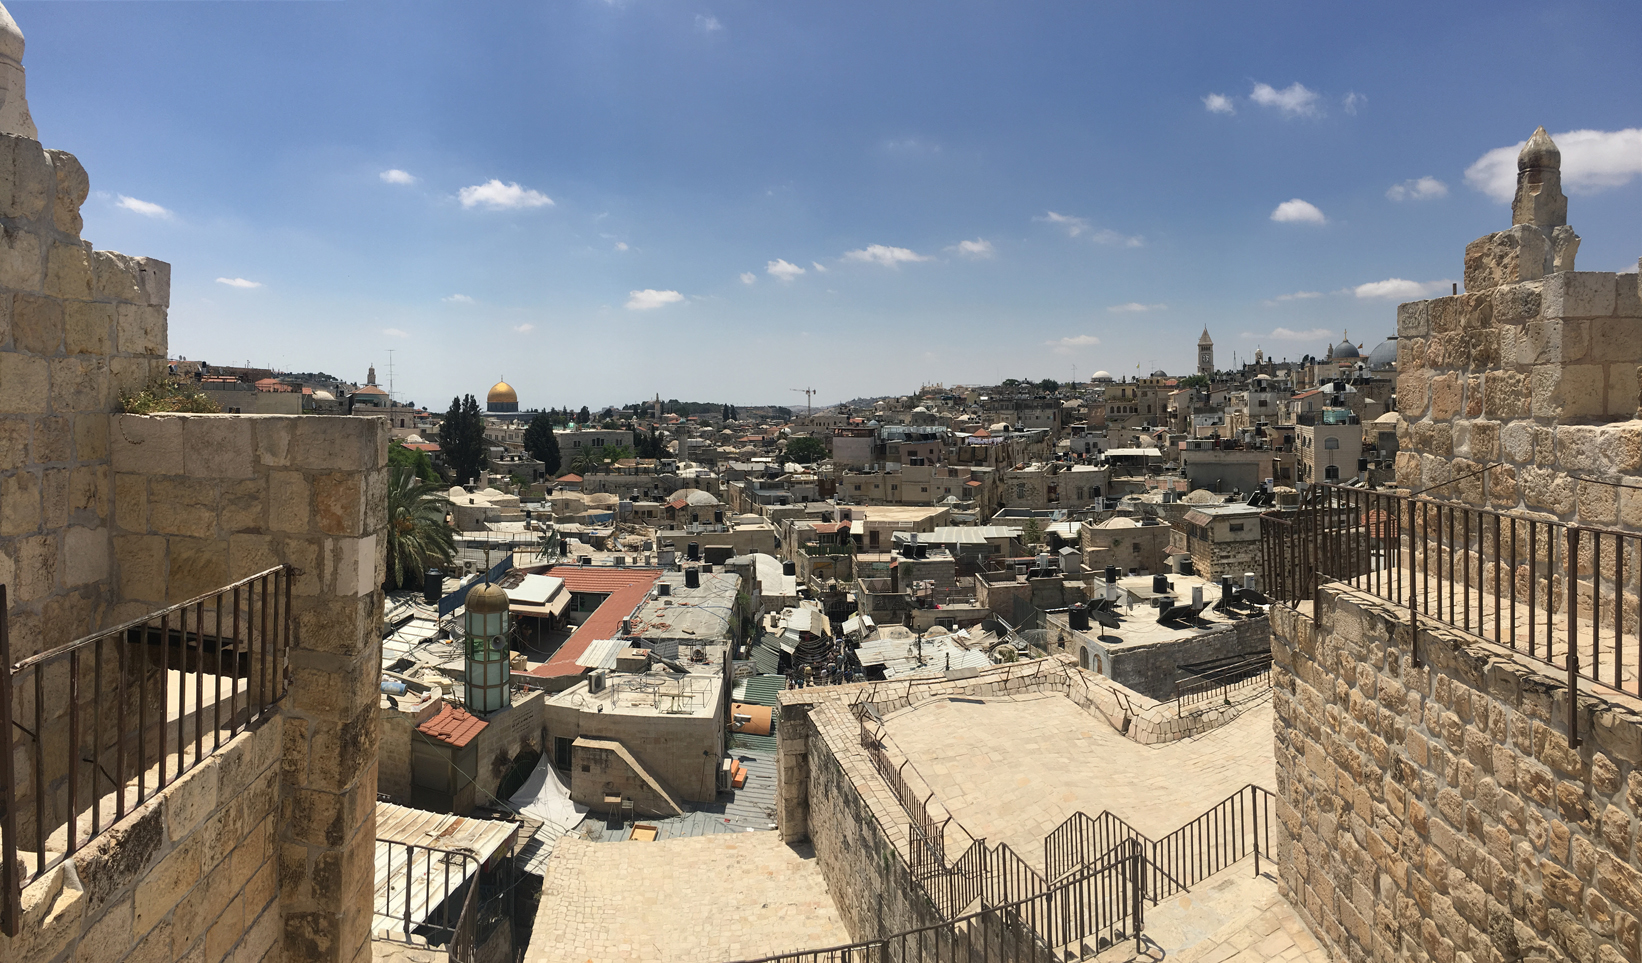 הכיכר הרומית בירושלים נפתחה לאחר עשור HymIvw8DbS_0_0_1642_963_large